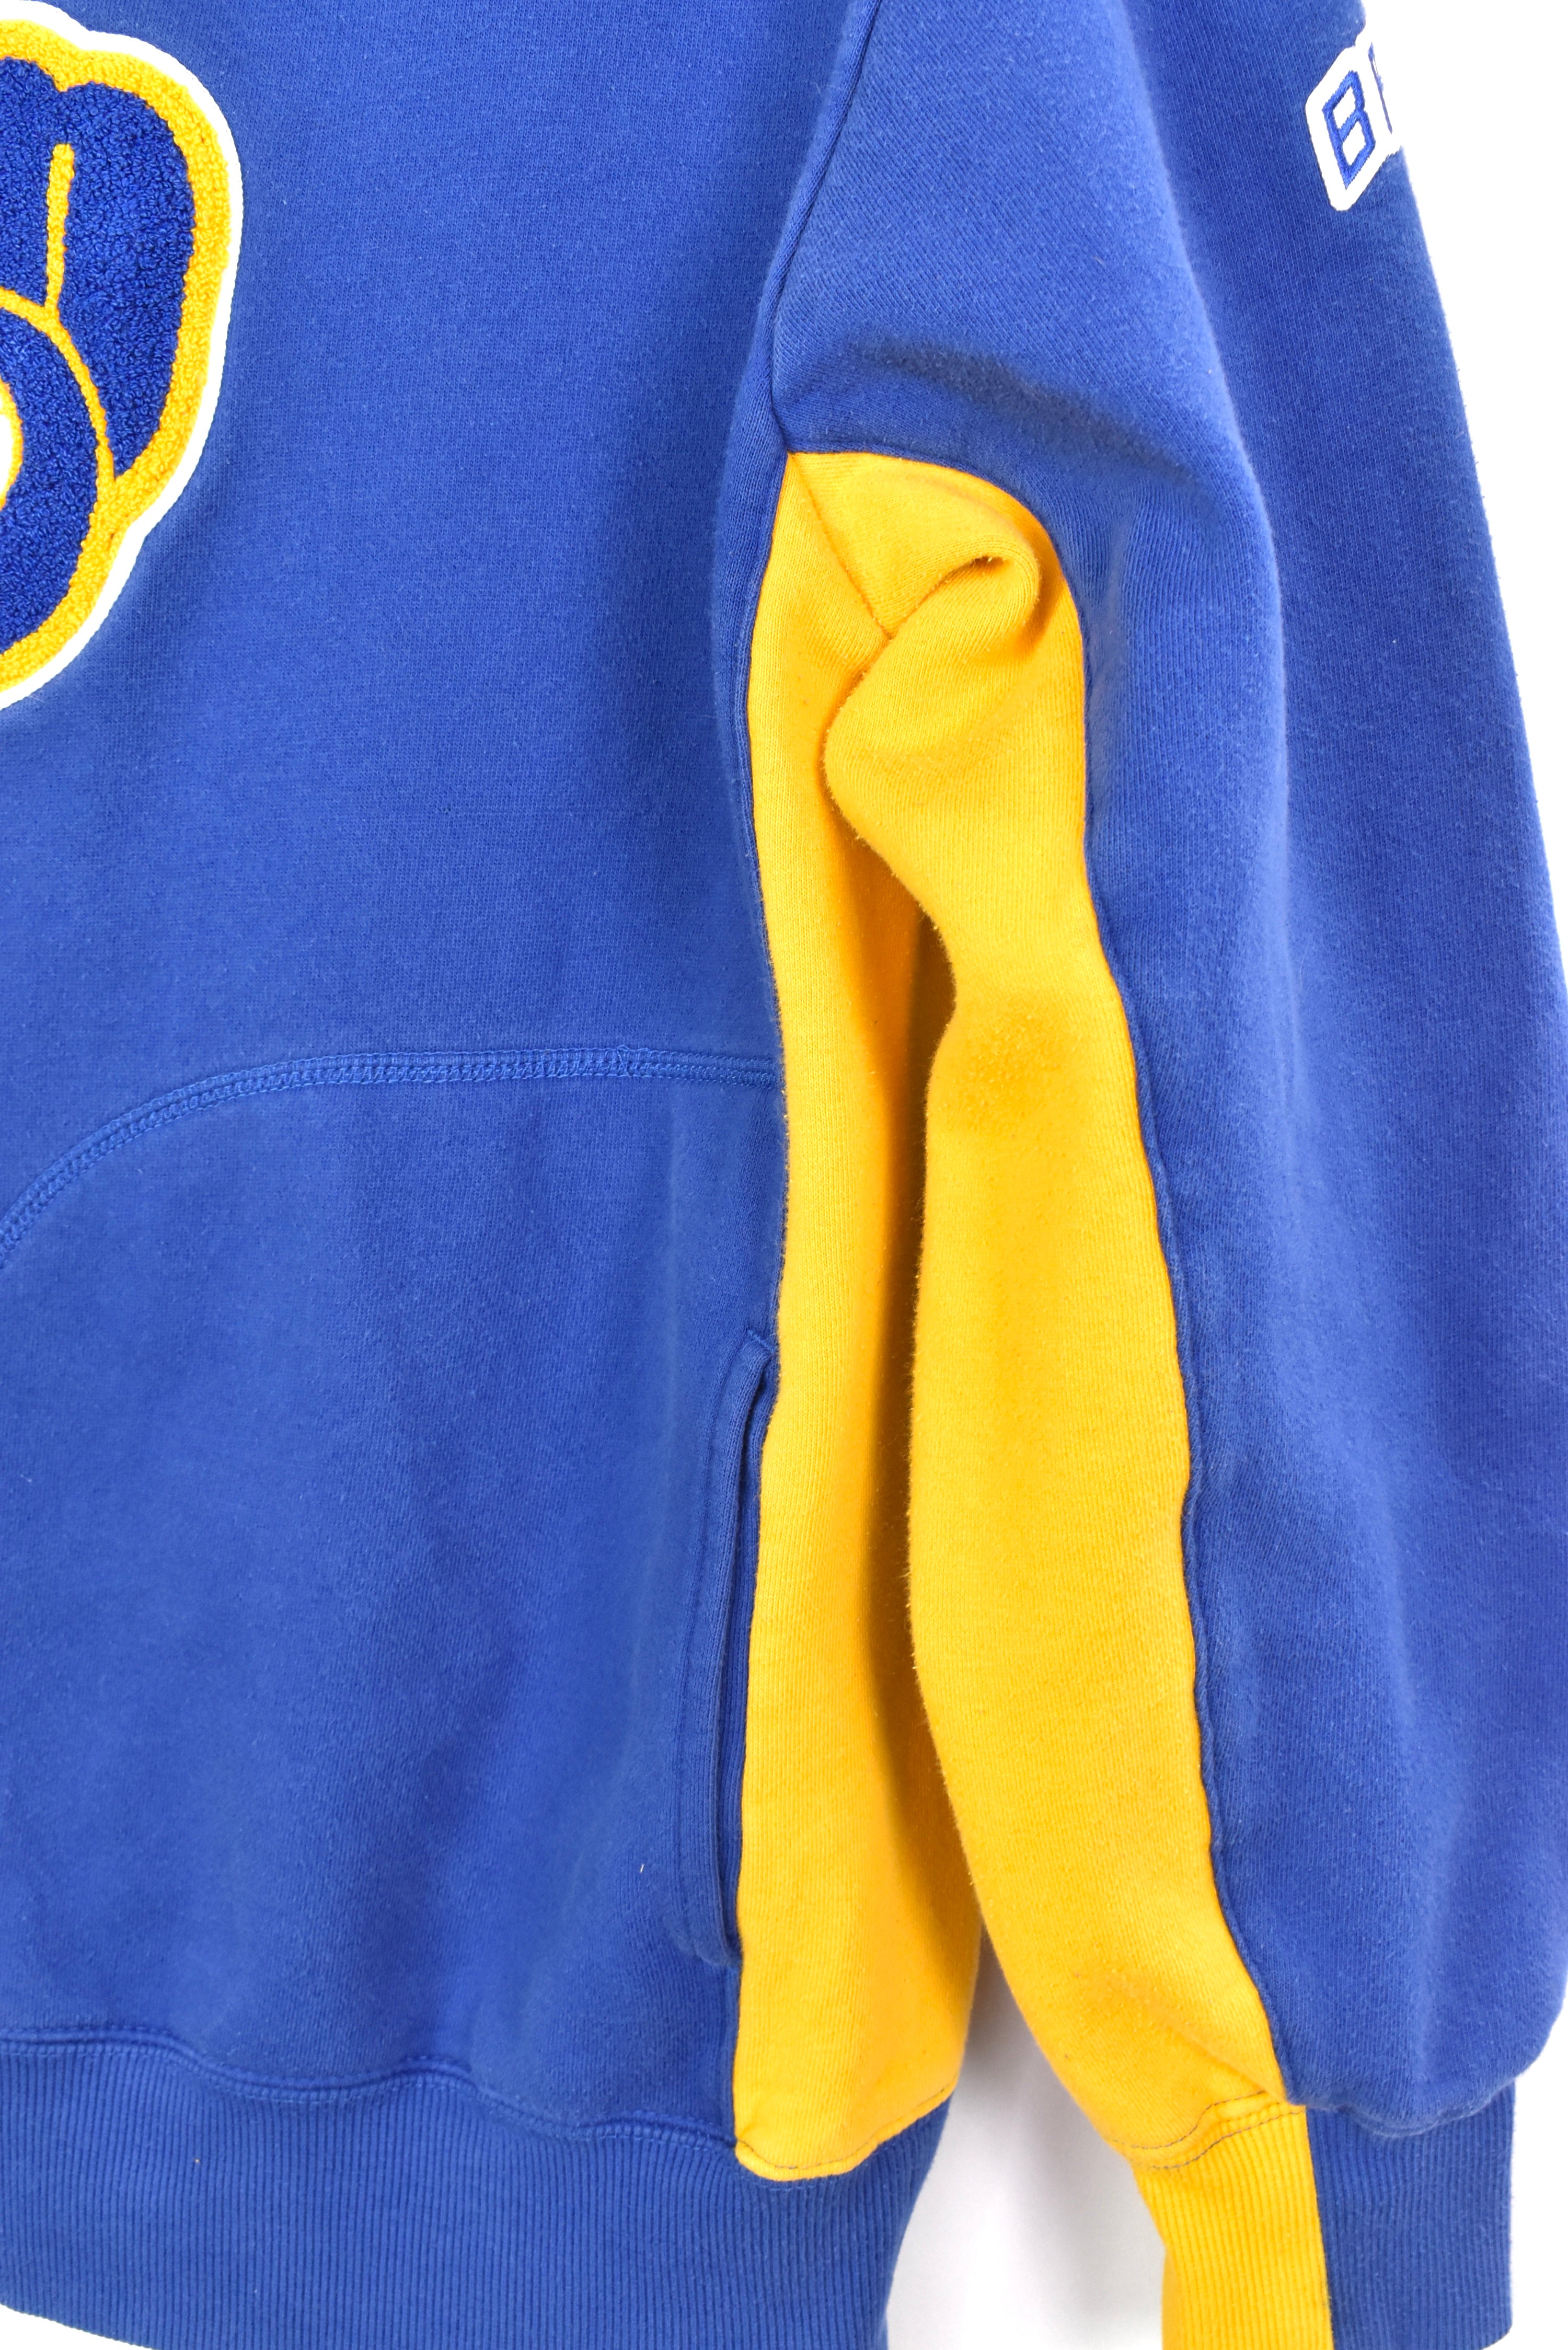 Vintage Milwaukee Brewers hoodie, MLB embroidered sweatshirt - large, blue PRO SPORT